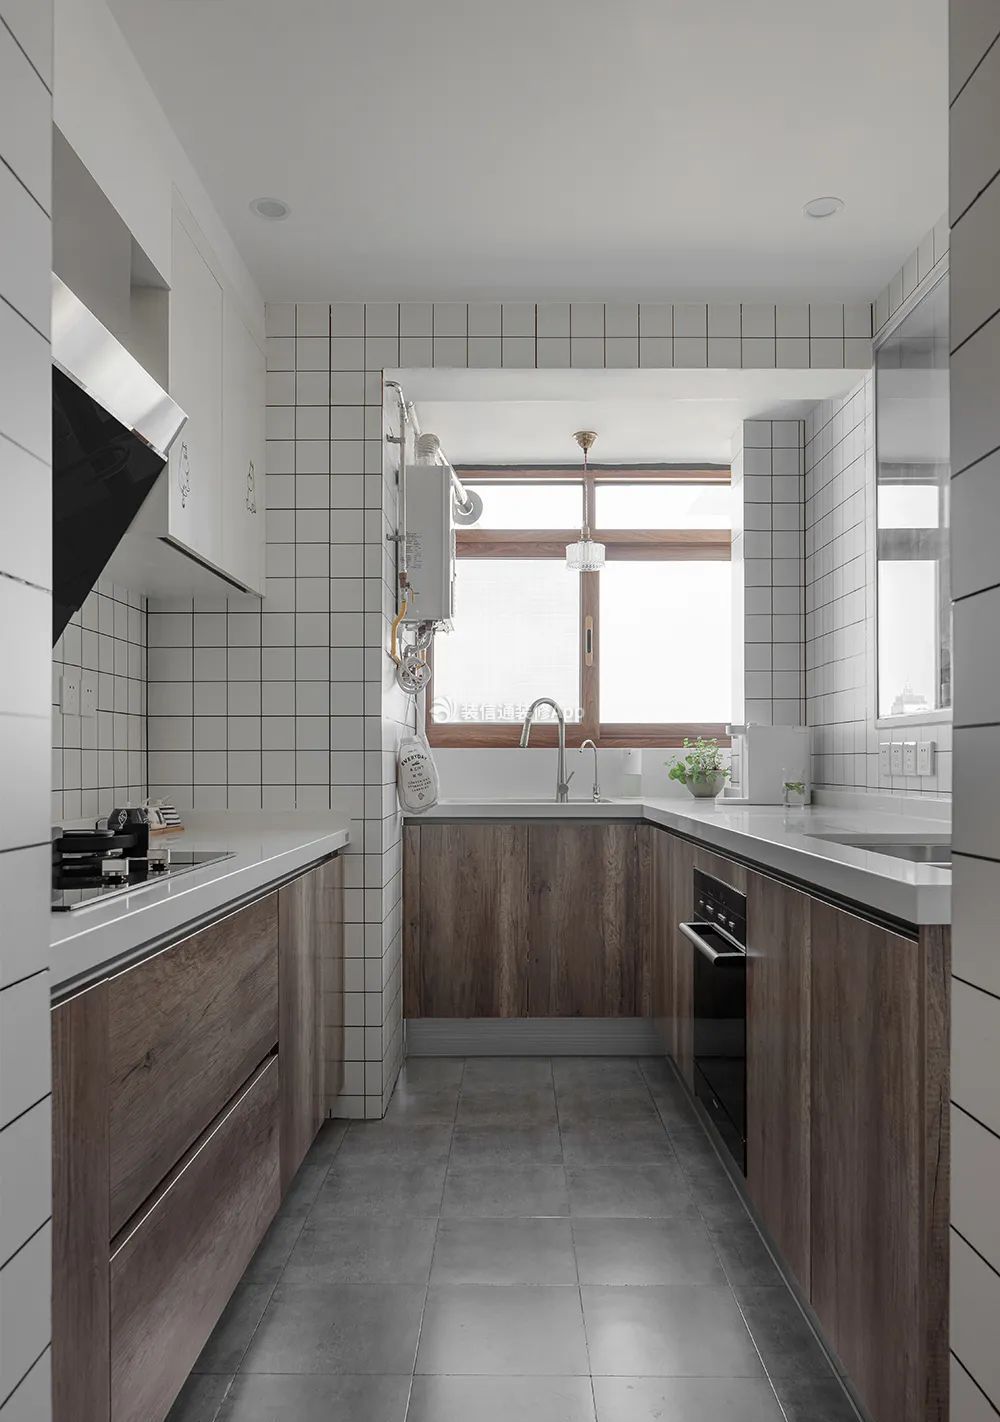 上海70平米房子厨房北欧风格装修图